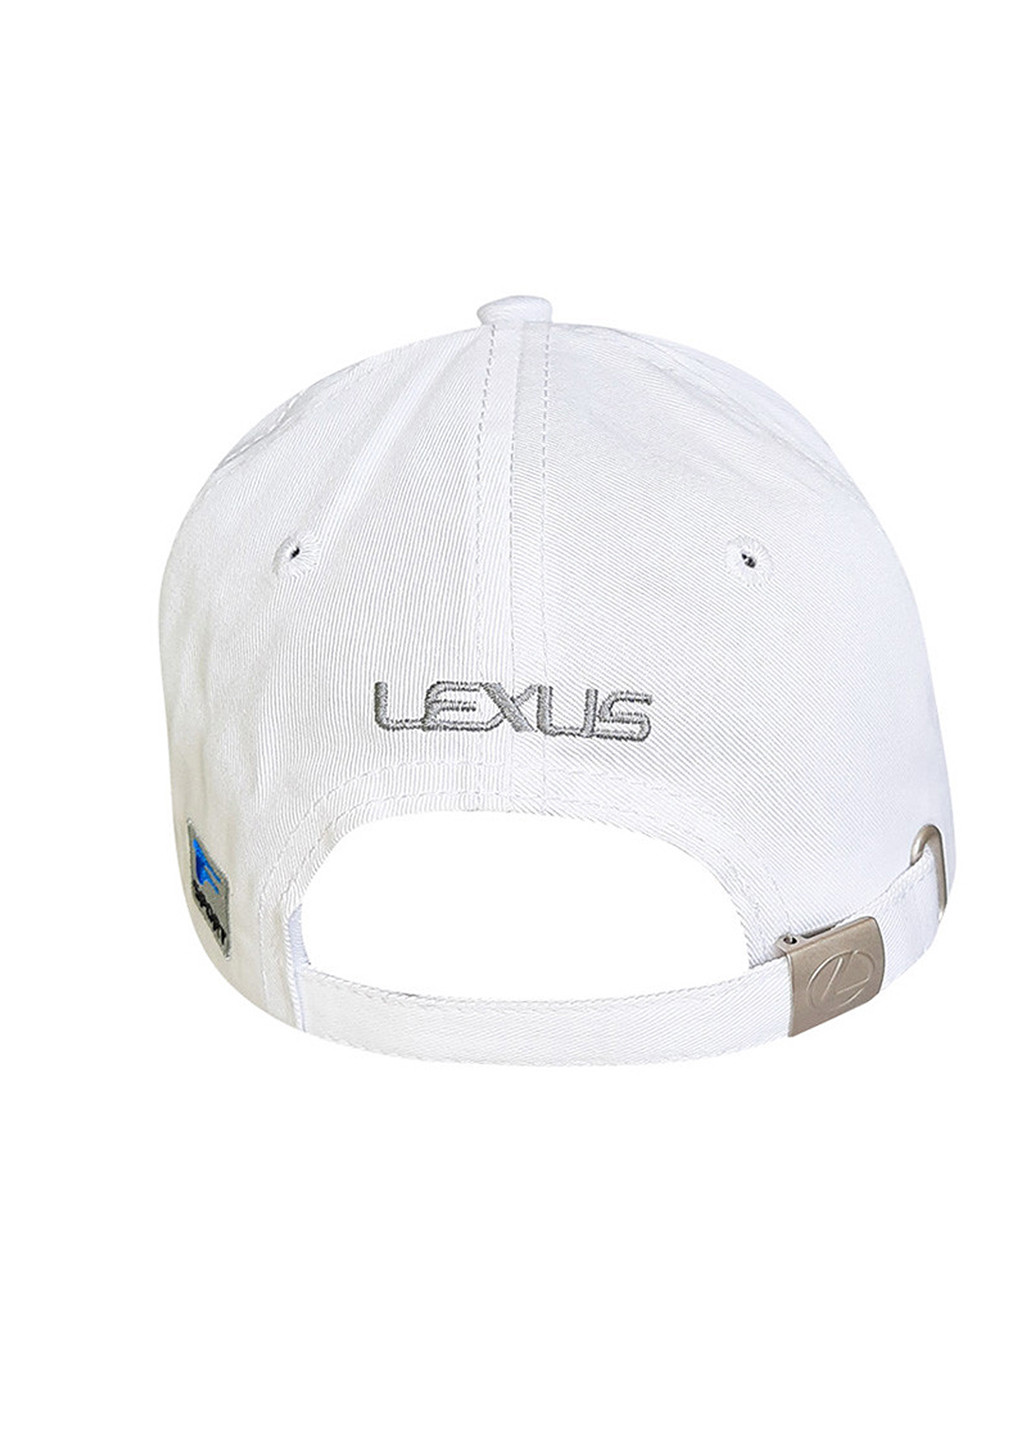 Бейсболка с логотипом авто Лексус Sport Line (211409772)